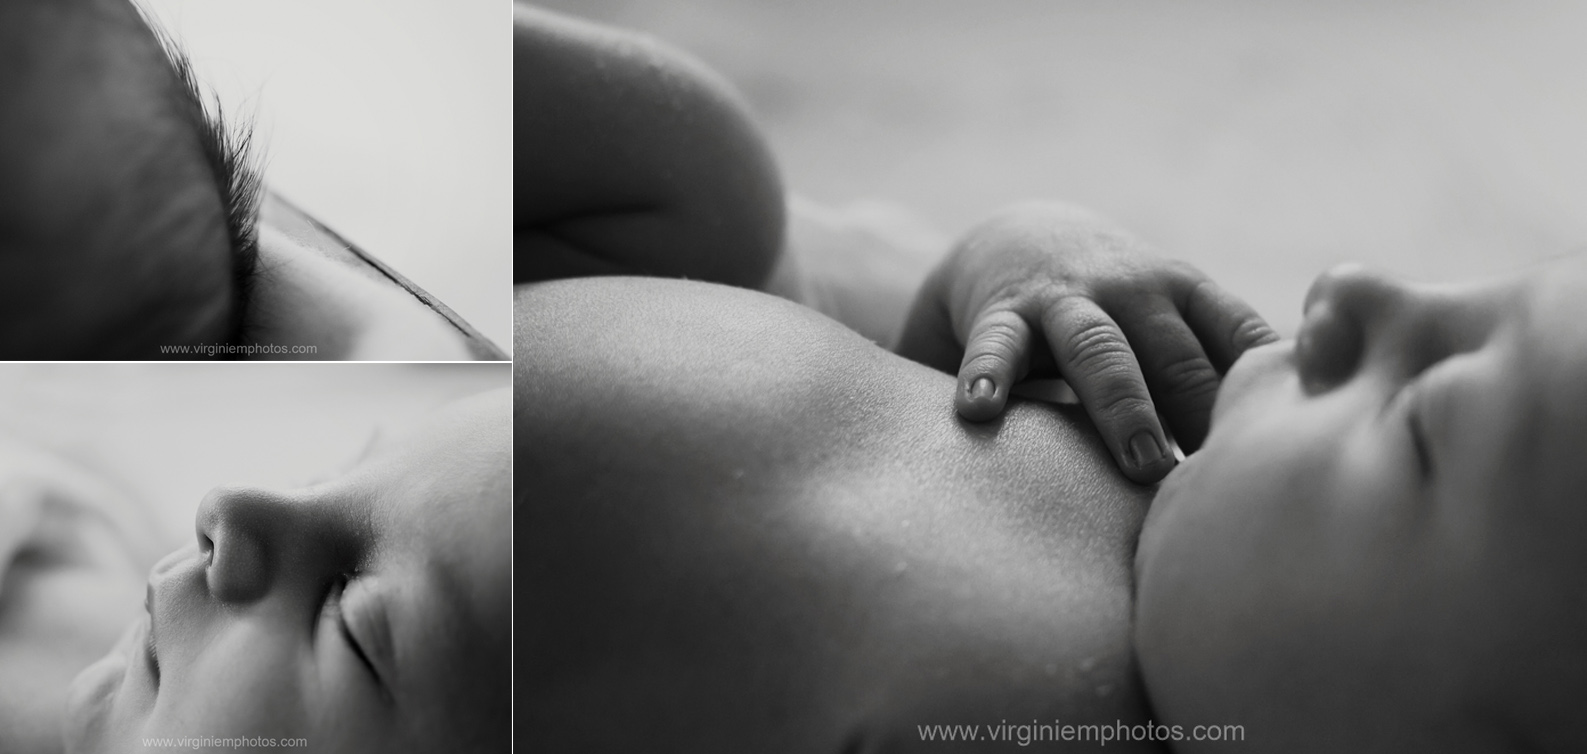 Virginie M Photos - photographe nord-croix-naissance-bébé-famille-grossesse-mariage-détails (1)